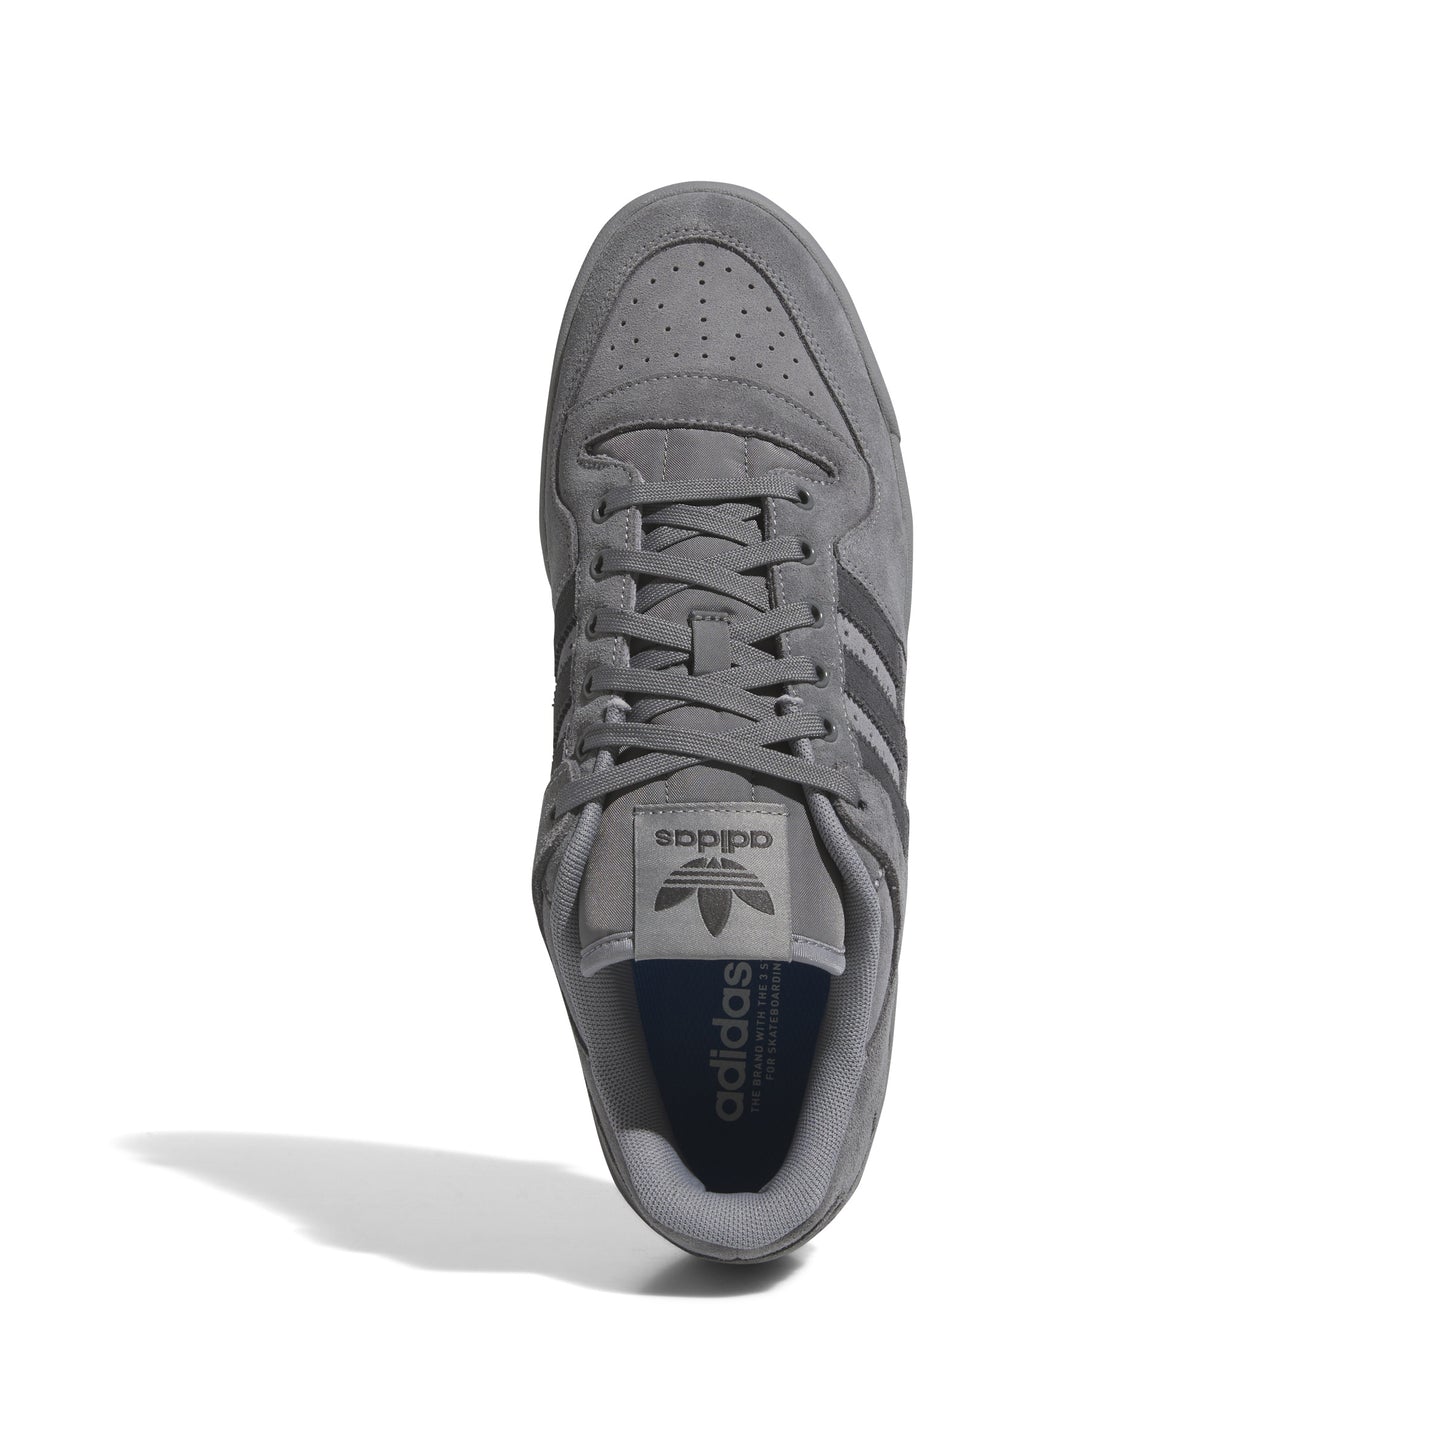 Adidas Forum 84 Low ADV Grey Four / Carbon / Grey Three